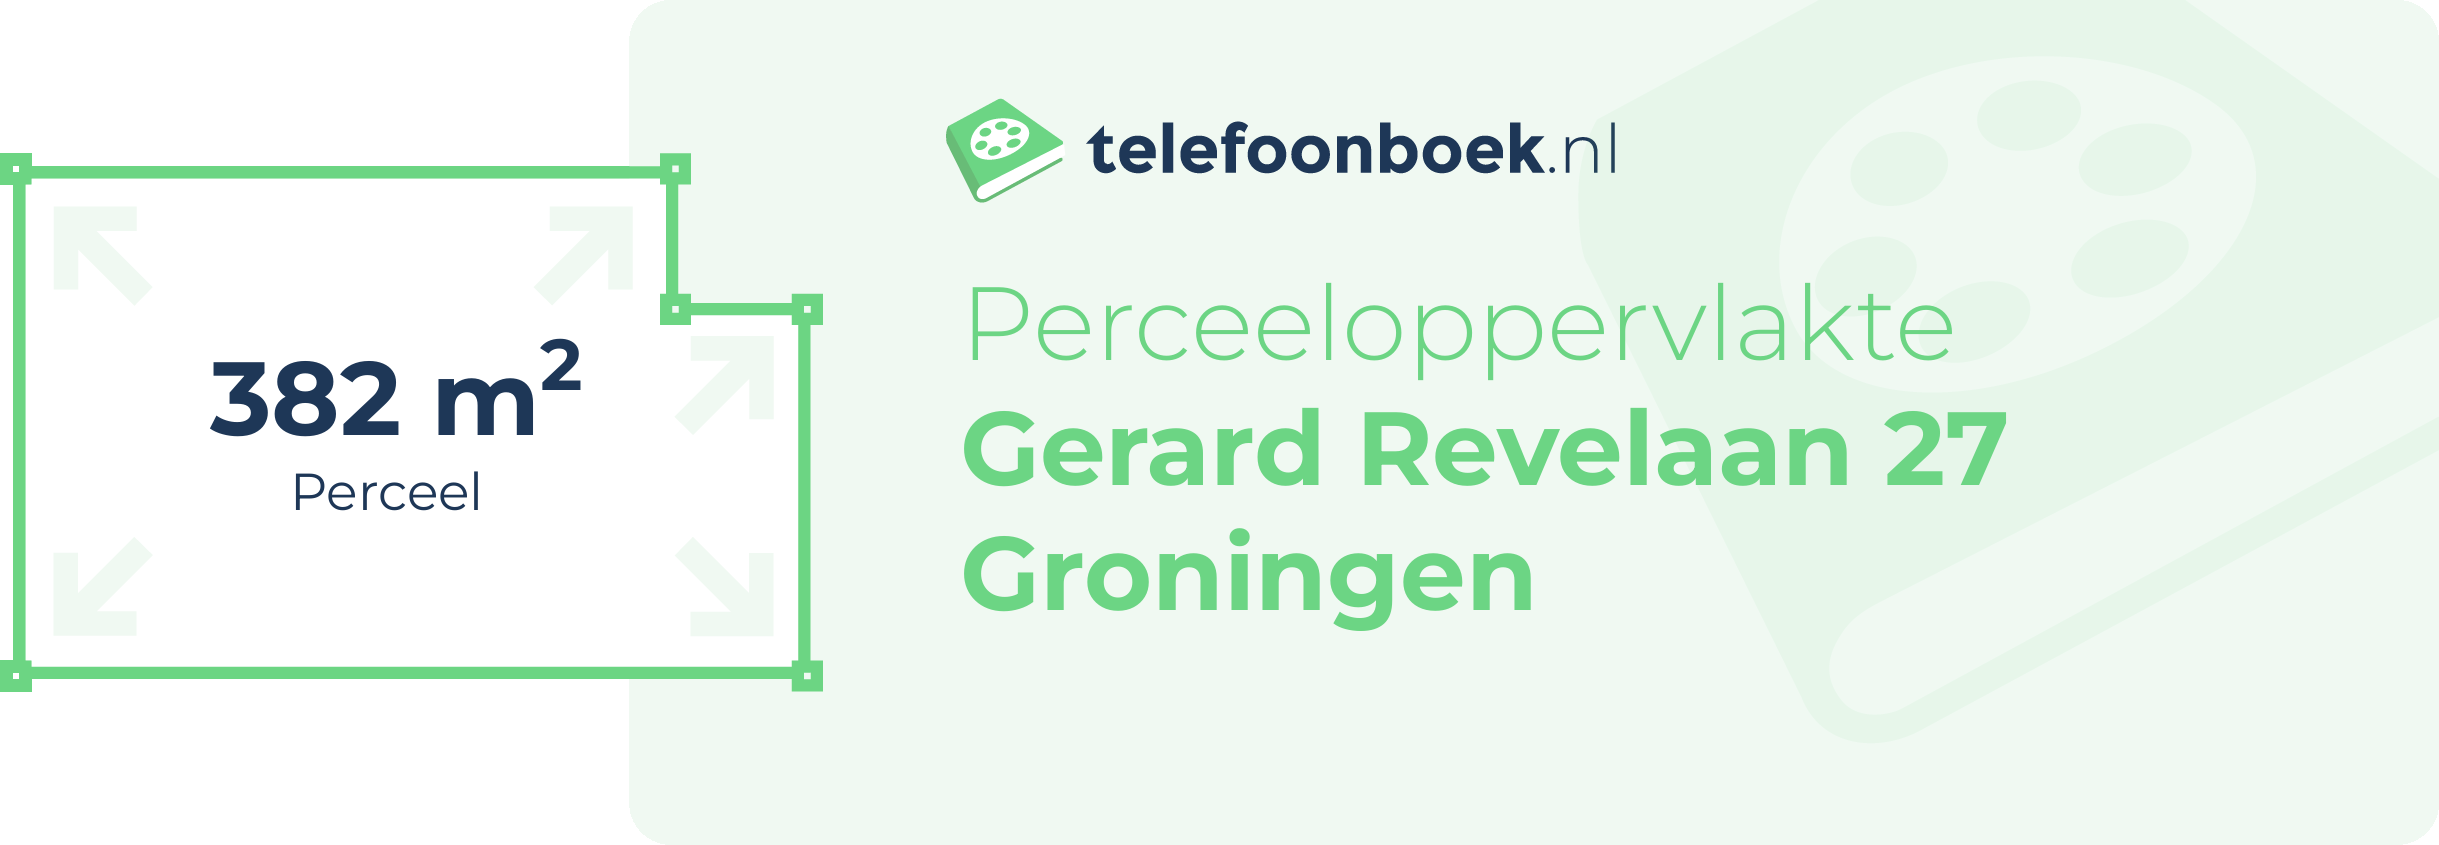 Perceeloppervlakte Gerard Revelaan 27 Groningen